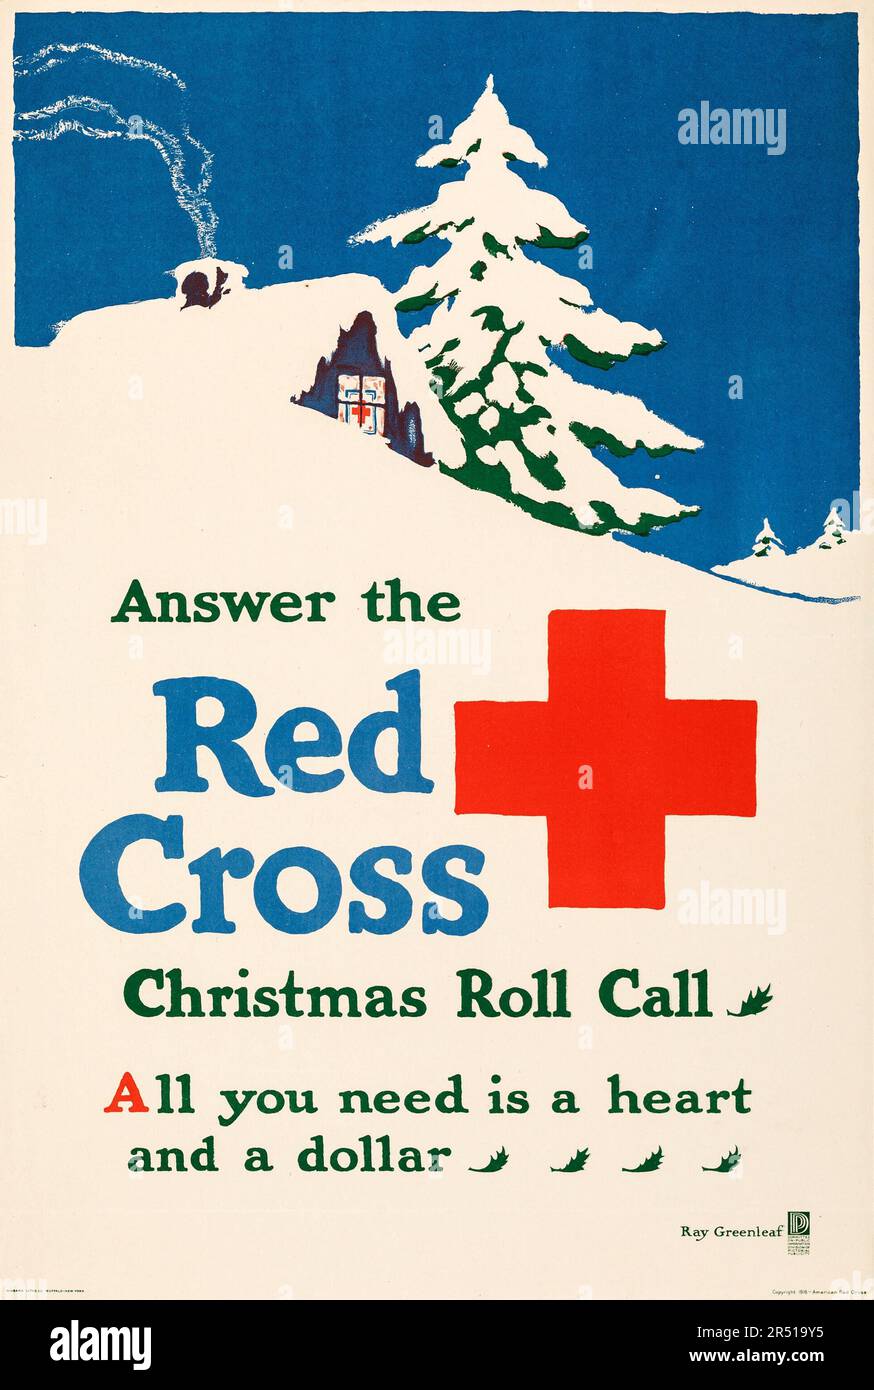 Propagande américaine de la première Guerre mondiale (Croix-Rouge nationale américaine, 1918). Affiche publicitaire « Christmas Roll Call », Ray Greenleaf Artwork Banque D'Images